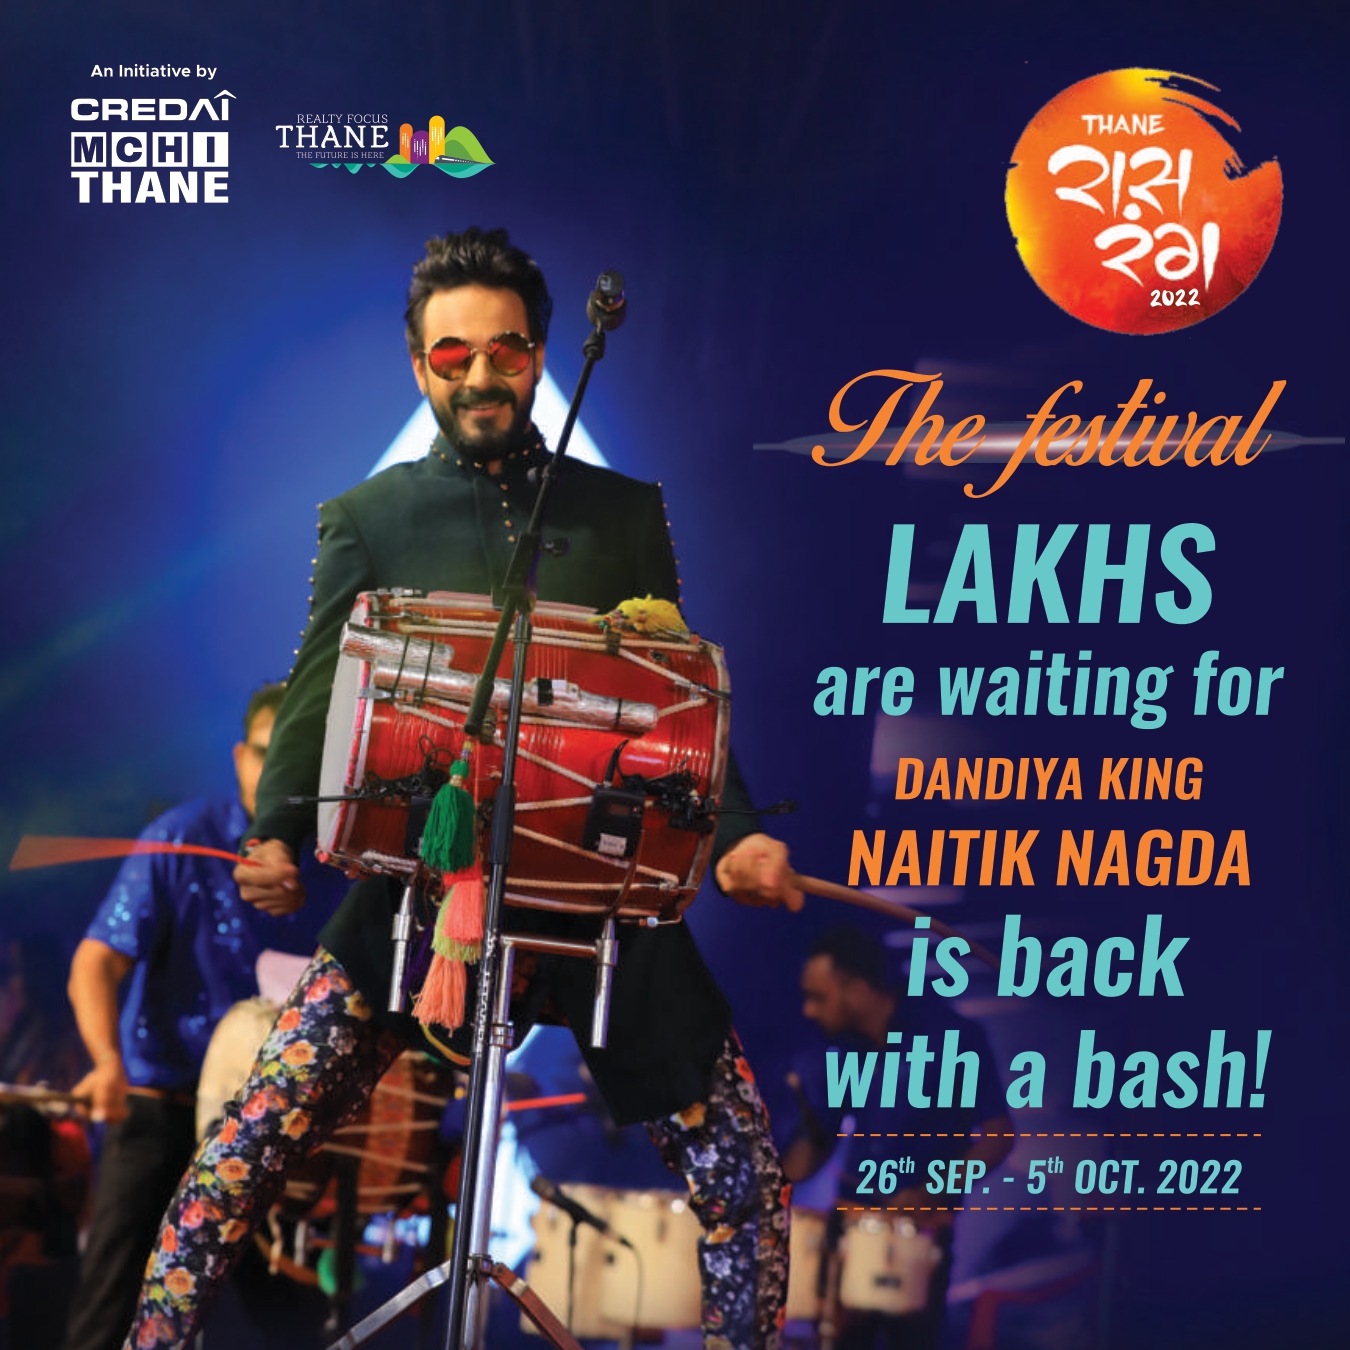 Thane Raas Rang - The Festival Lakhs Are Waiting For Dandiya King Naitik Nagda Is Back With A Bash!